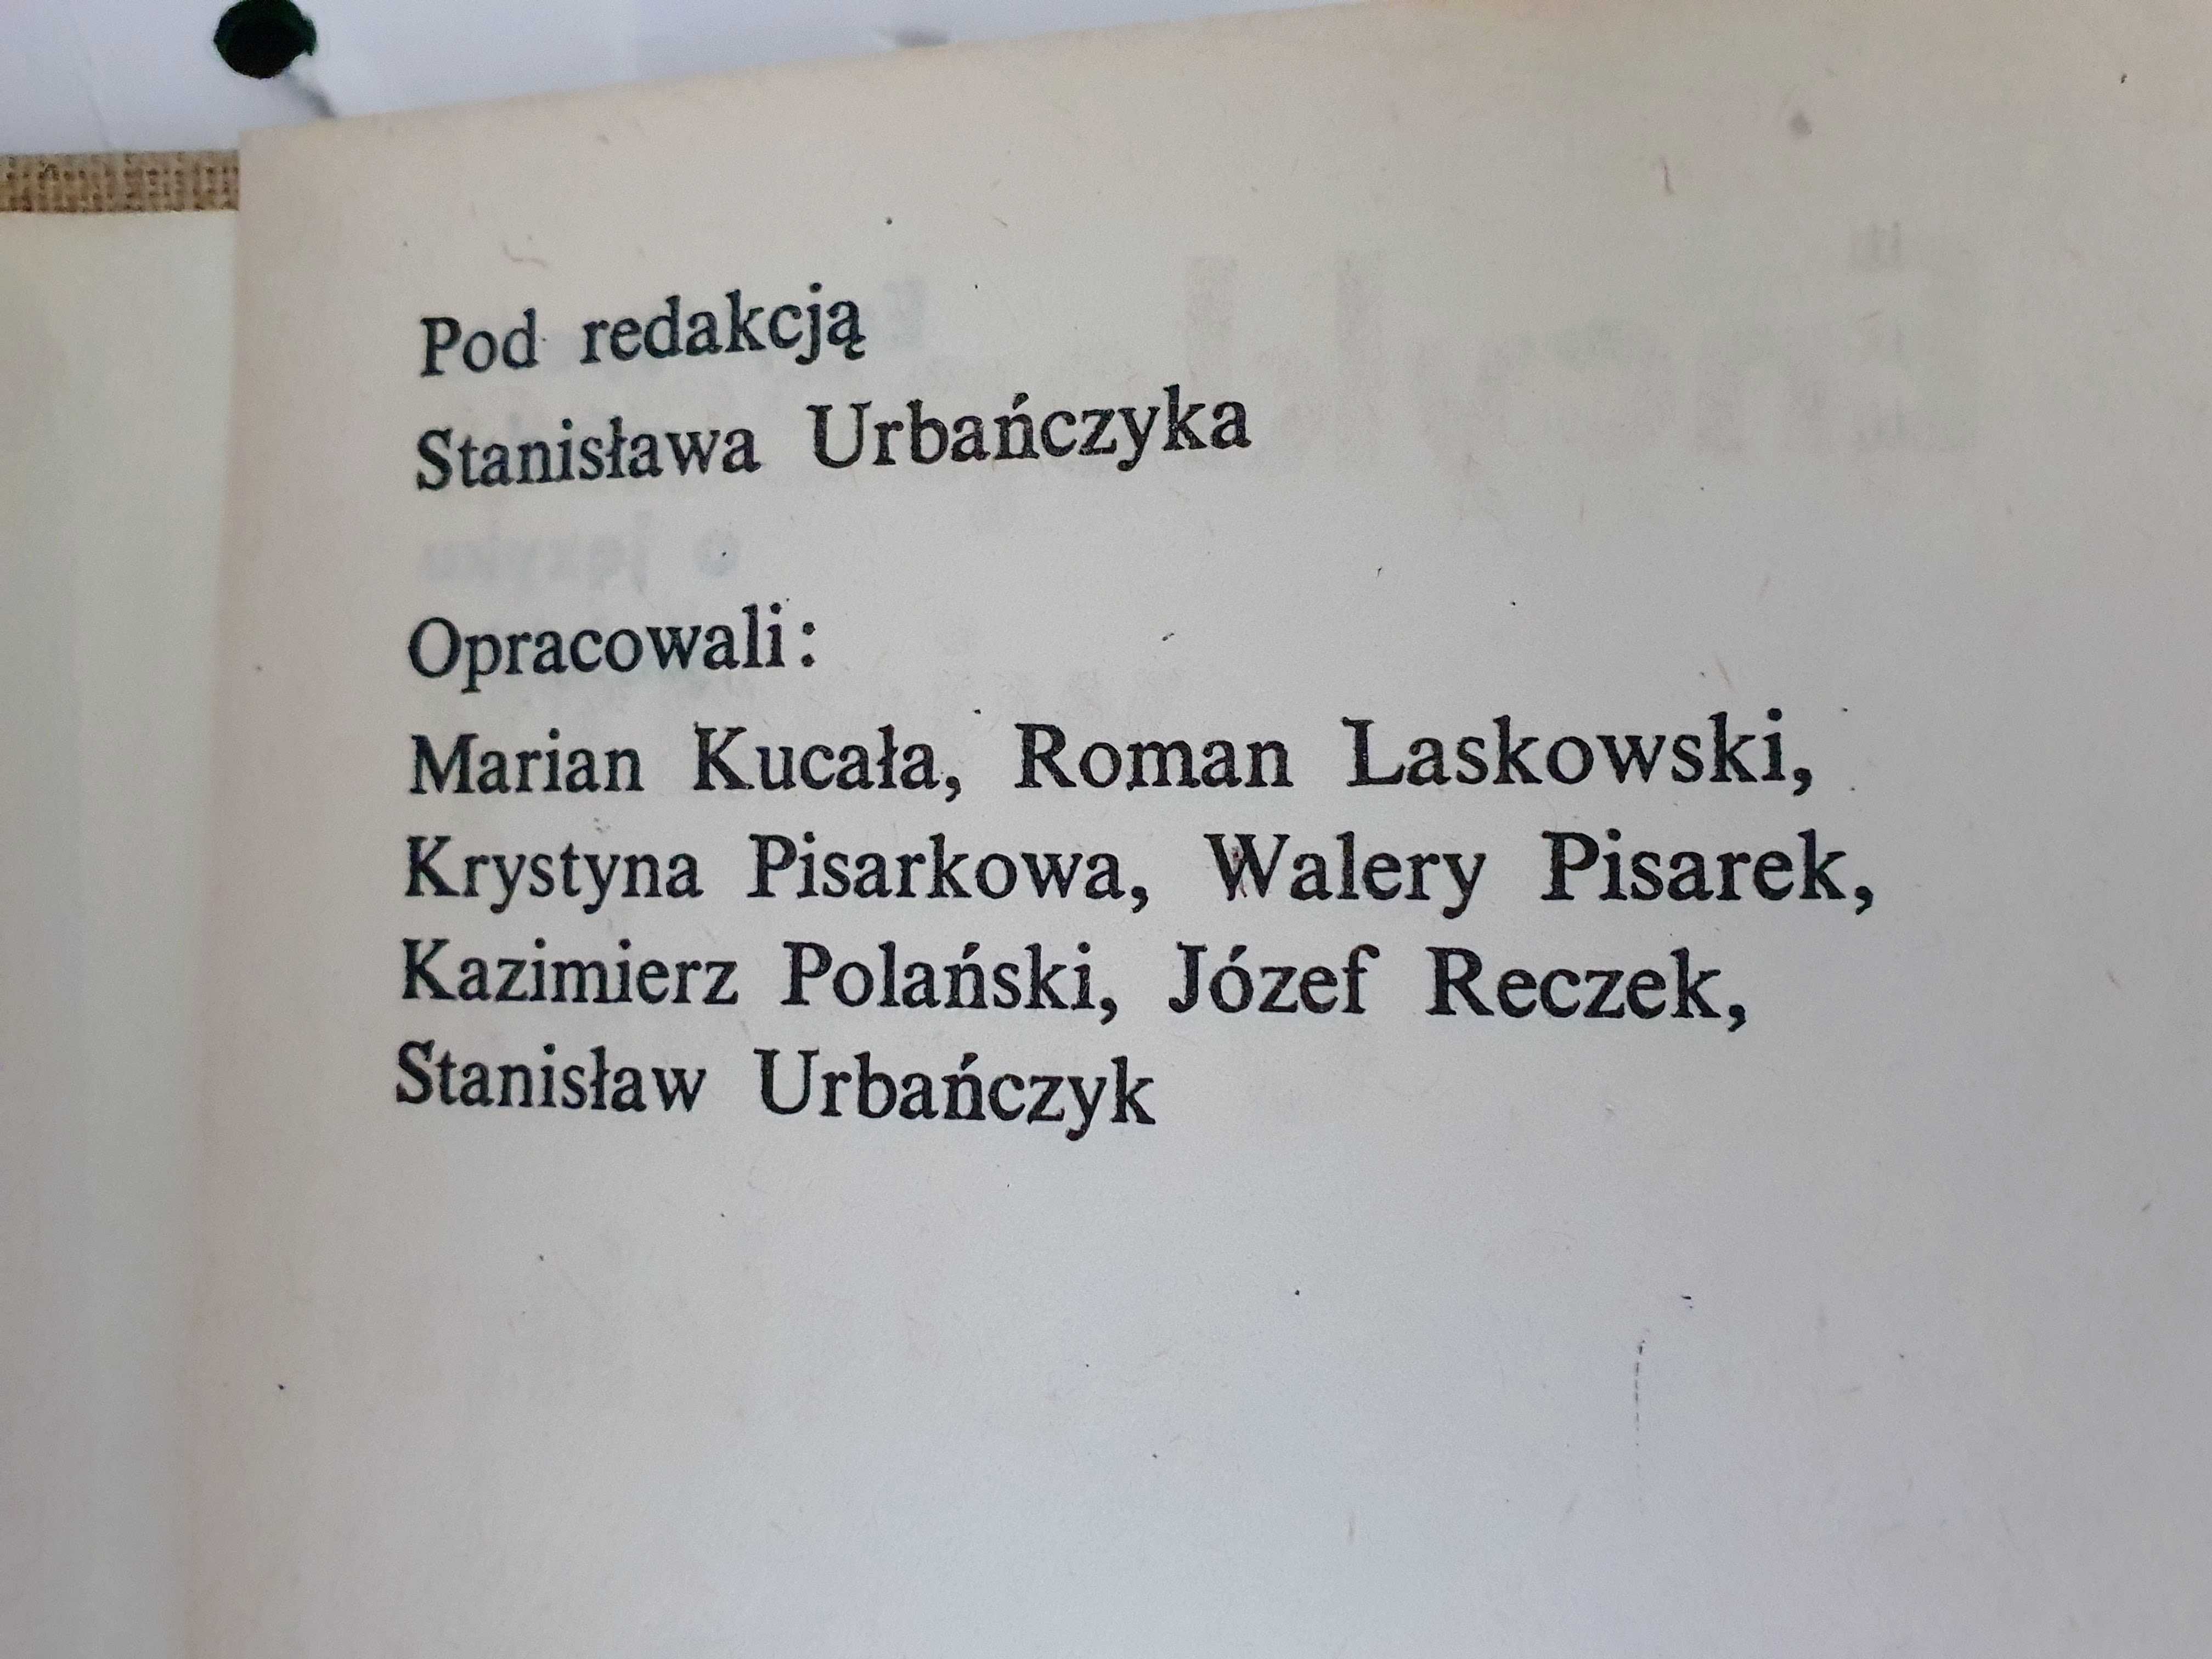 Encyklopedia wiedzy o języku polskim - Ossolineum 1978